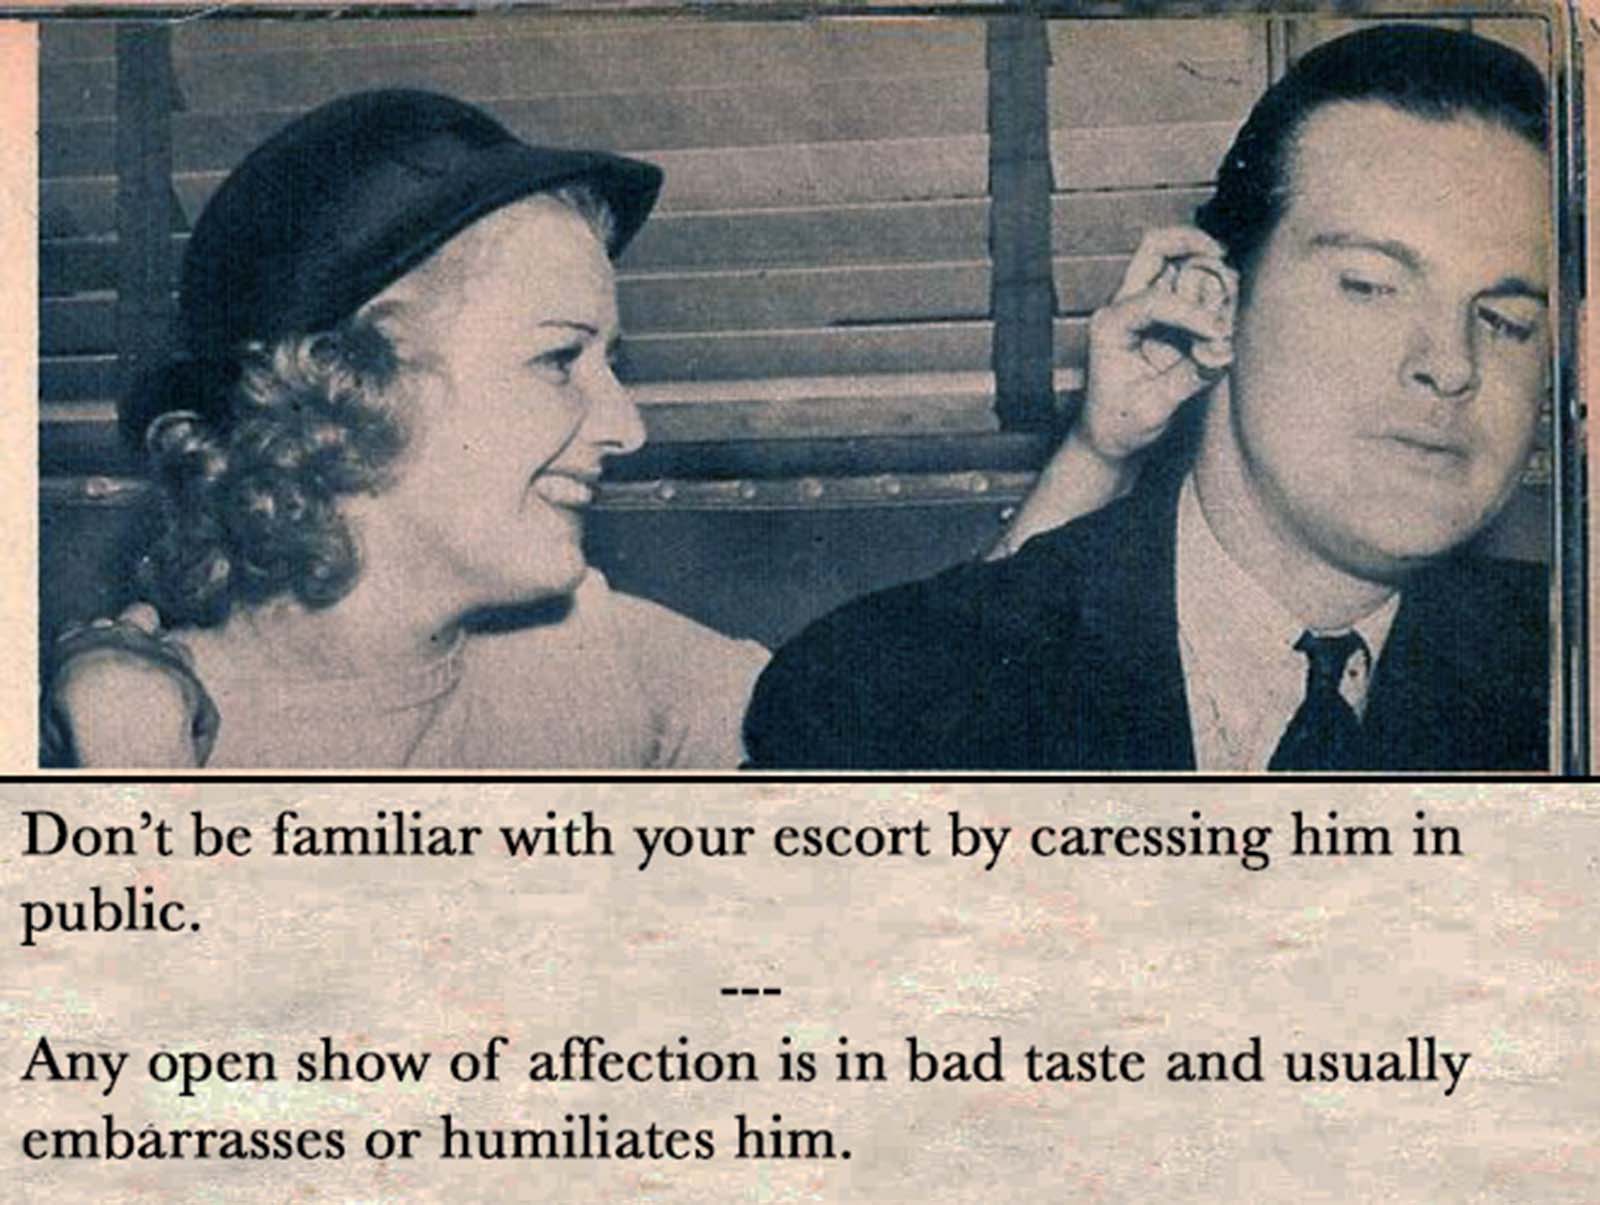 Conseils de rencontres vintage pour femmes célibataires, 1938